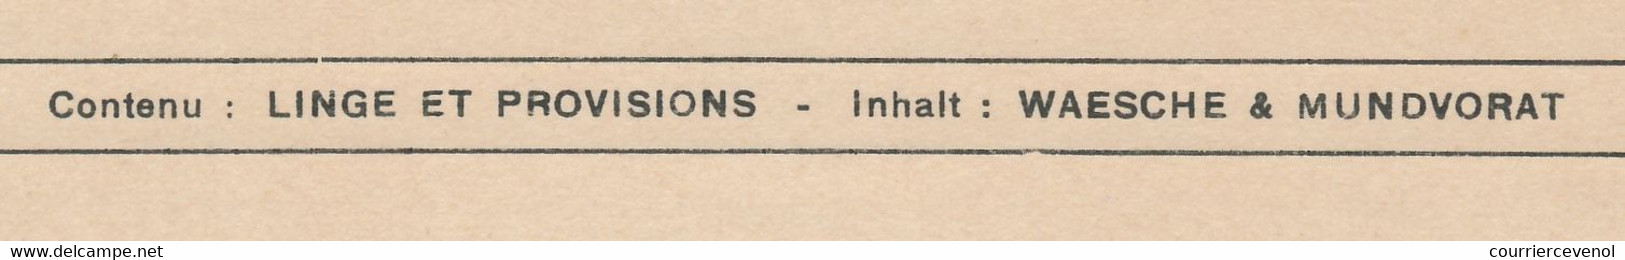 FRANCE - Grande étiquette Pour Envoi De Linge Et Provisions - Service Des Prisonniers De Guerre Kriegsgefangenensendung - WW II